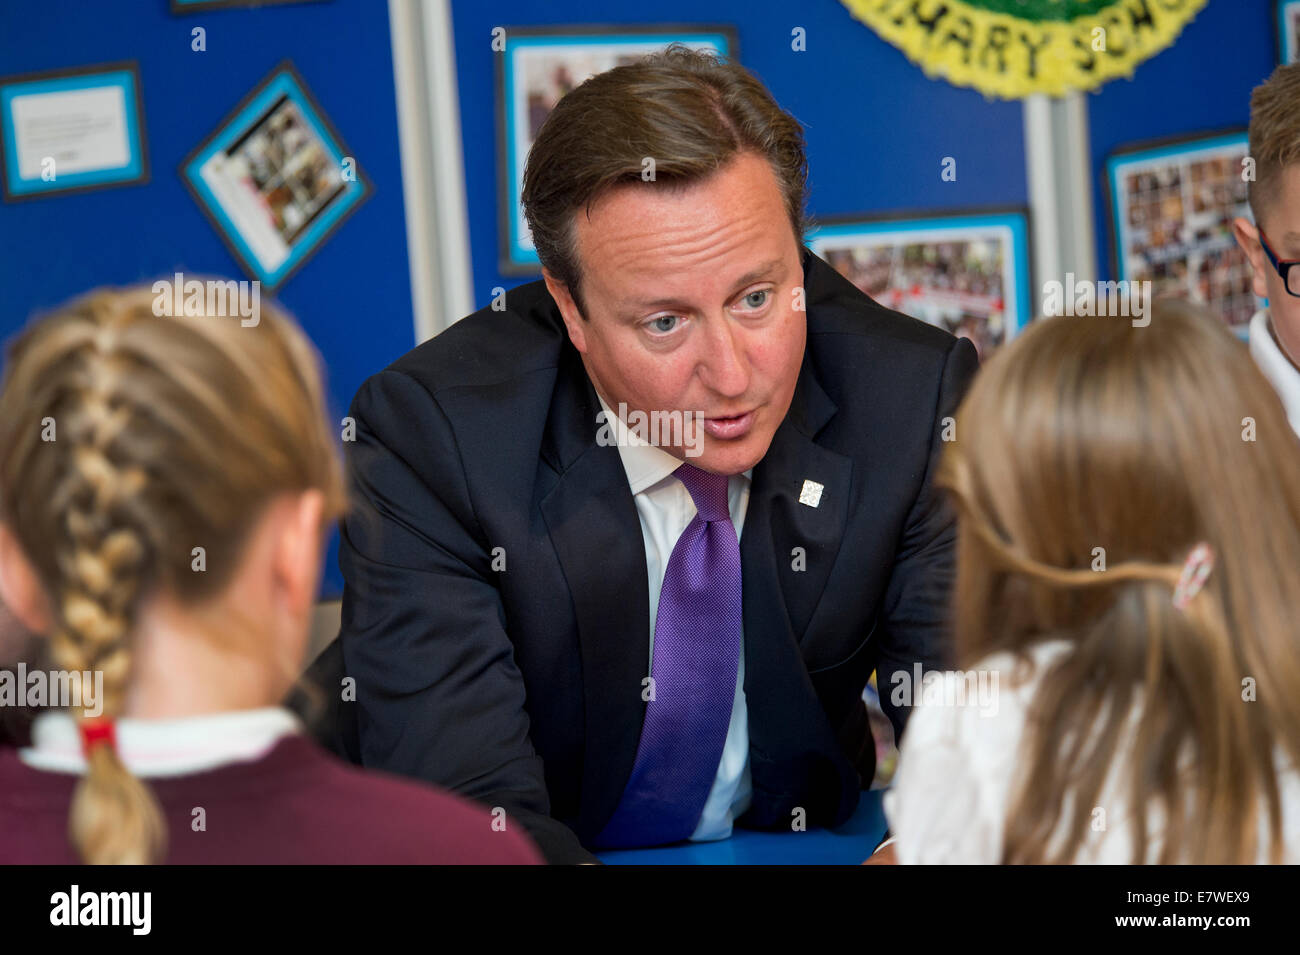 NATO-Gipfel in Wales mit Präsident Barack Obama ein Premierminister David Cameron Besuch einer Grundschule in Newport Stockfoto